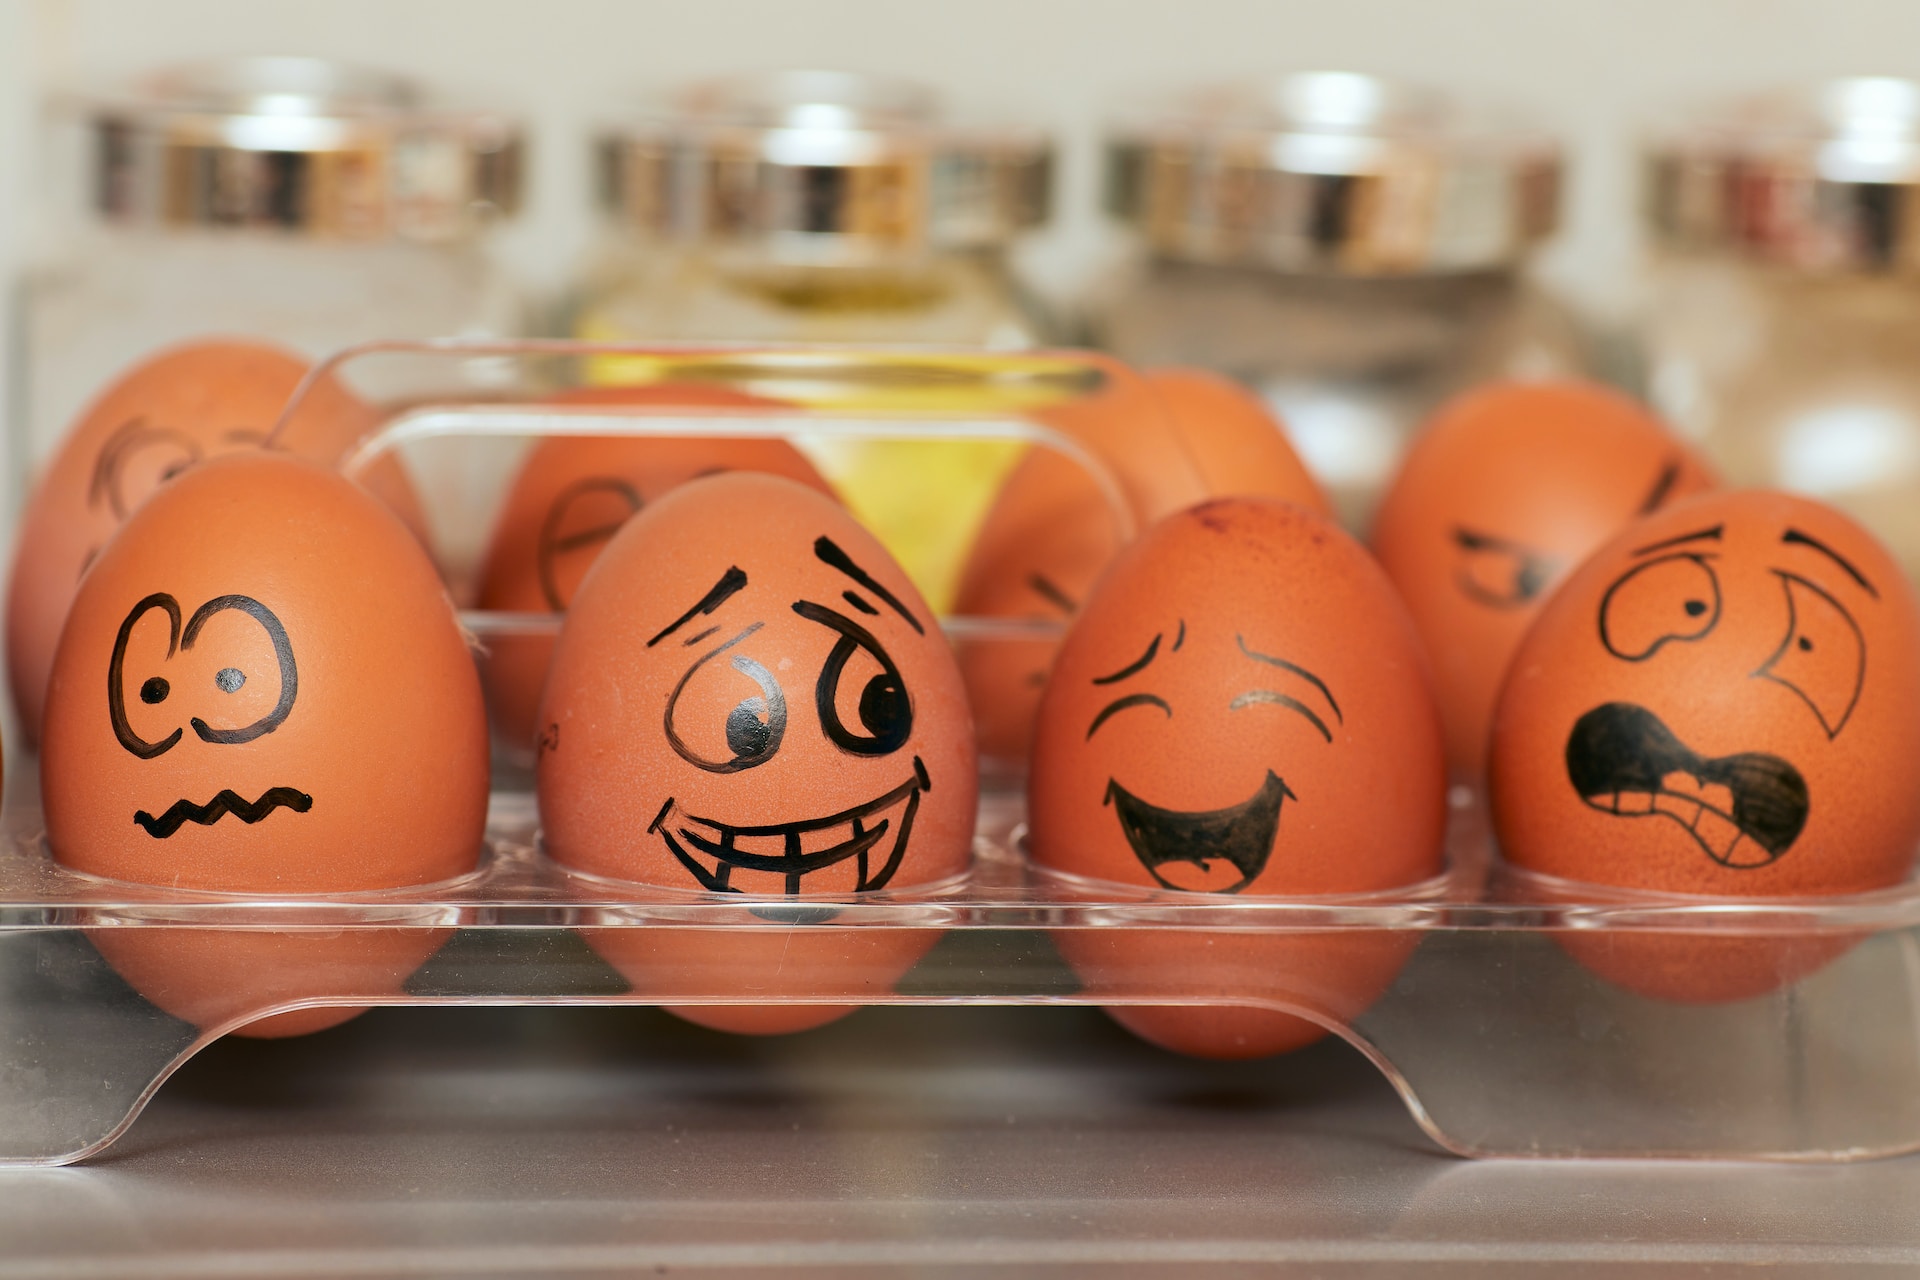 Есть восемь яиц с разными нарисованными лицами, демонстрирующими разные эмоции и настроение.